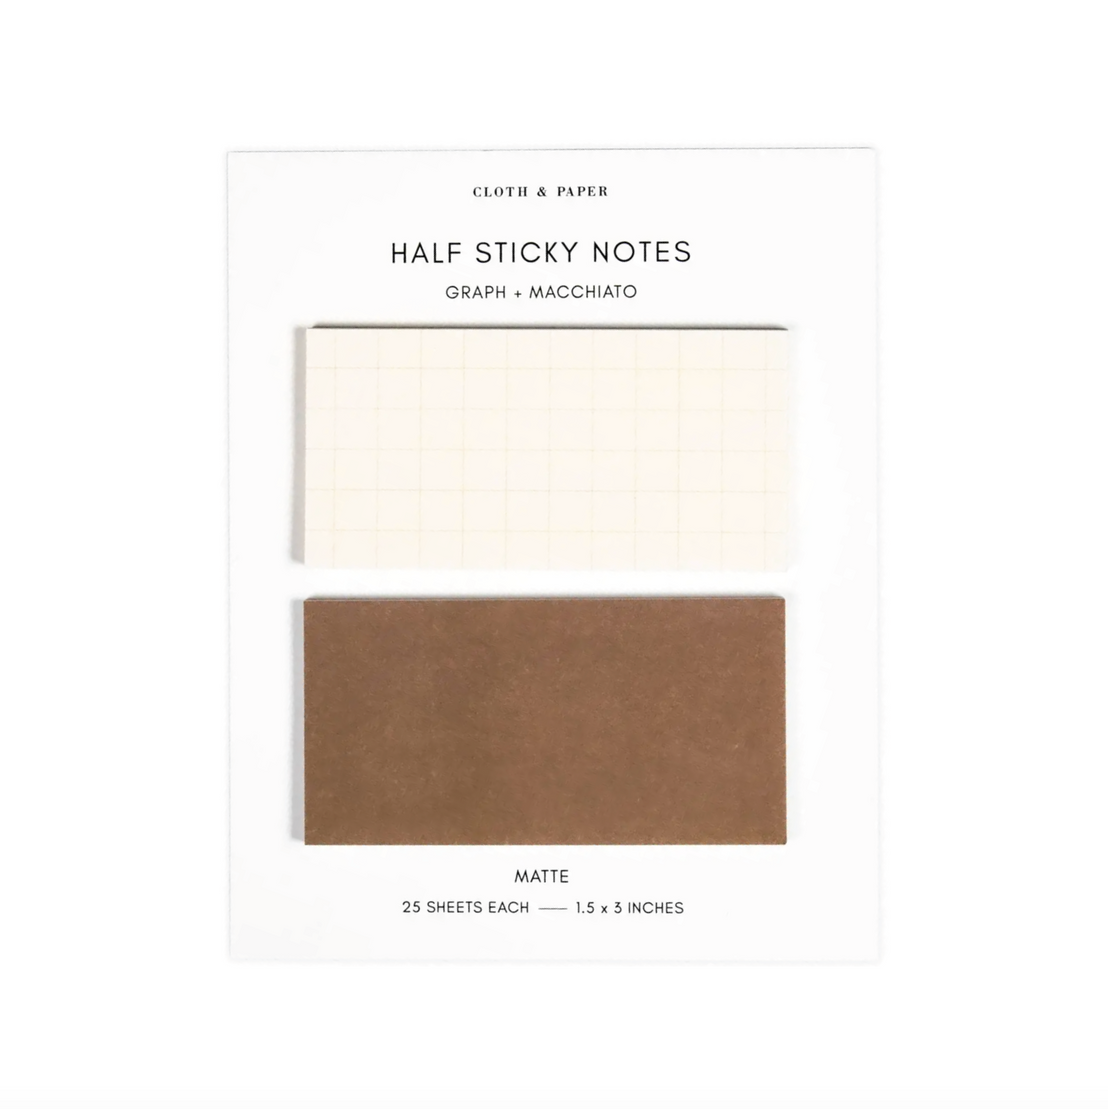 Half Sticky Notes Graph + Macchiato